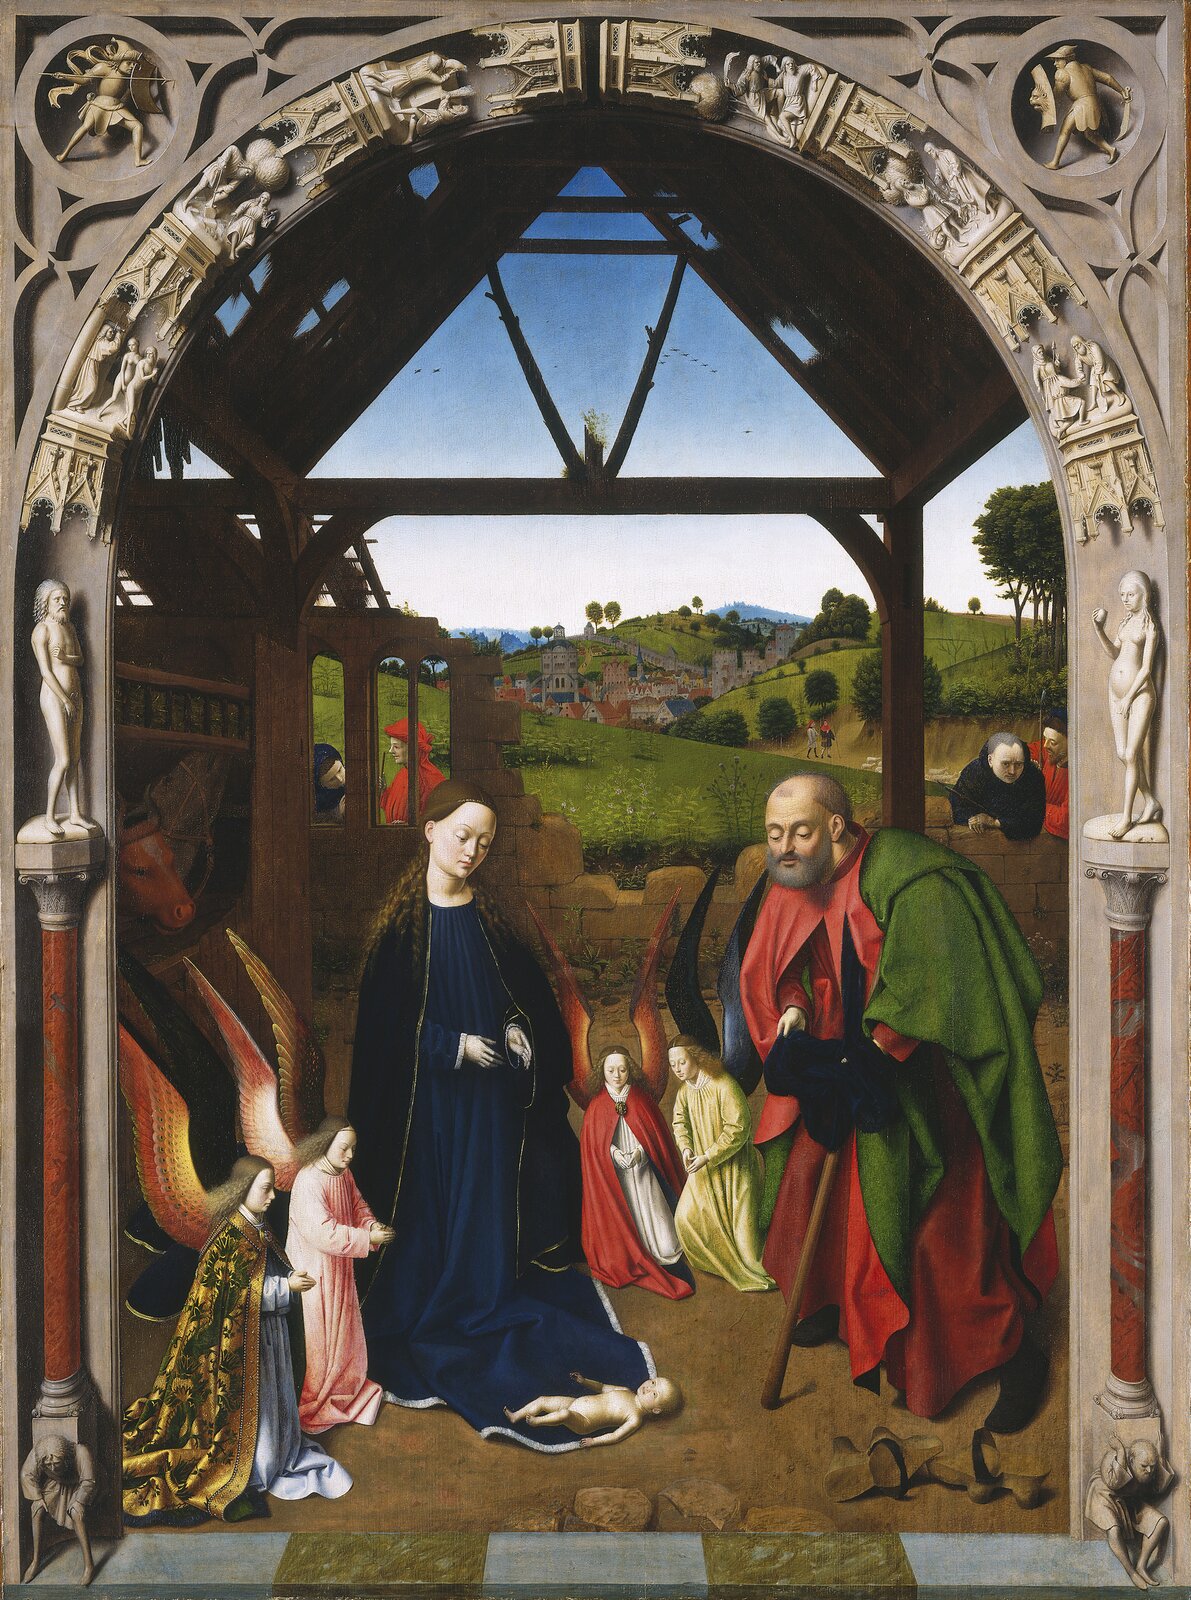 Ilustracja o kształcie pionowego prostokąta przedstawia dzieło Petrusa Christusa „Boże Narodzenie”.  Ukazuje scenę z Nowego testamentu zamieszczoną na tle pejzażu, obramowana w dekoracyjną ramę zwieńczona półkoliście i dekorowaną w górnej części motywami biblijnymi. Oprócz św. Rodziny na obrazie znajdują się dwie pary klęczących aniołów – jedna z przodu po lewej stronie, druga z tyłu, pomiędzy Józefem i Marią. Za murem przypatrują się scenie dwie postacie.  